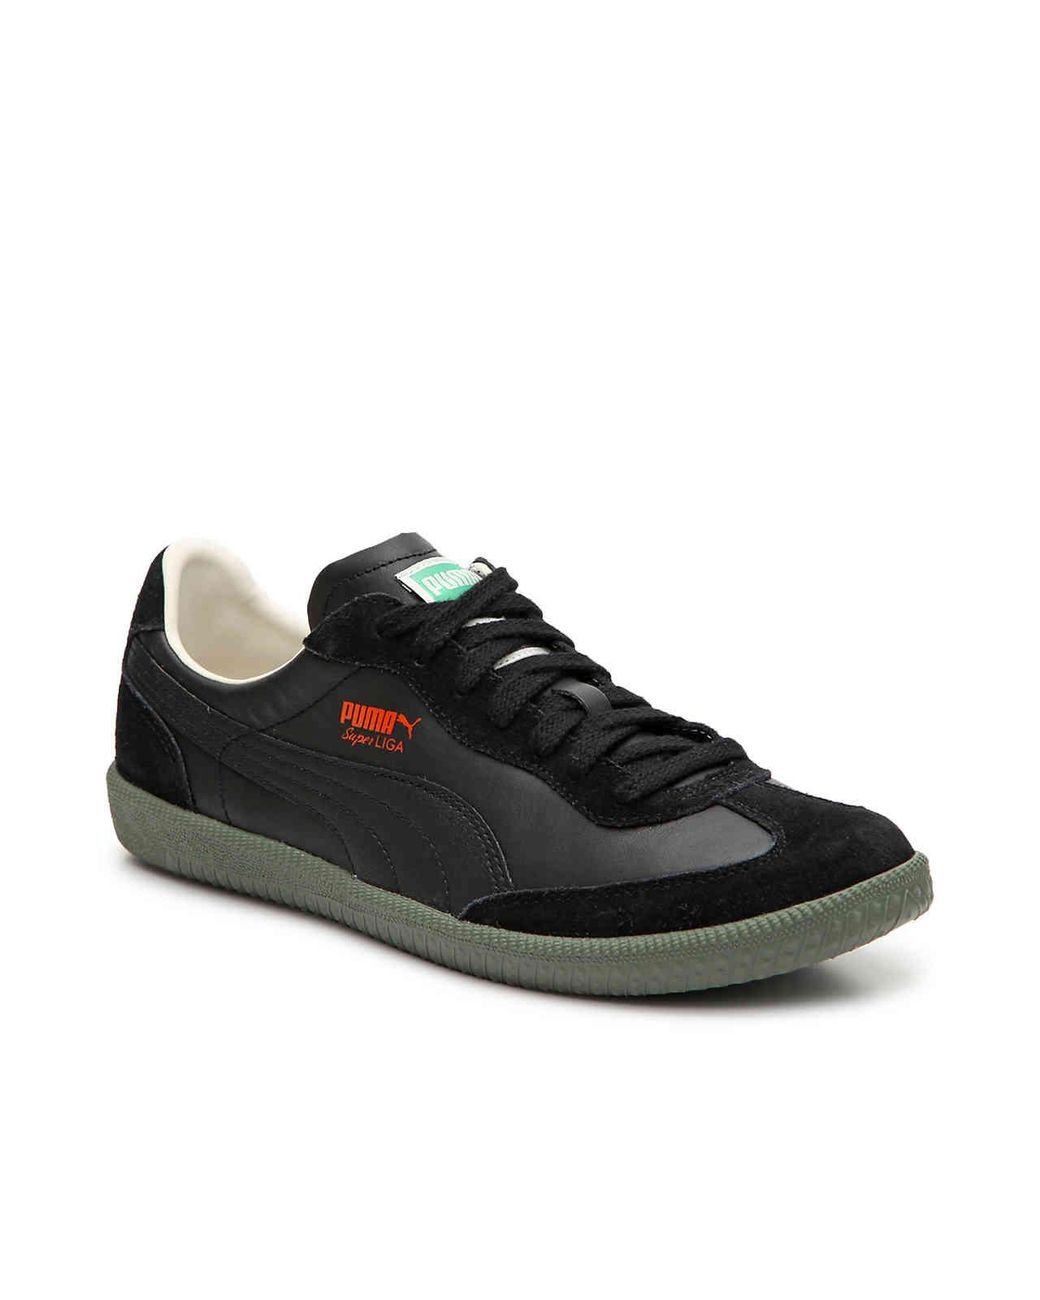 PUMA Super Liga Og Retro Sneaker in Black/Olive Green (Black) for Men | Lyst